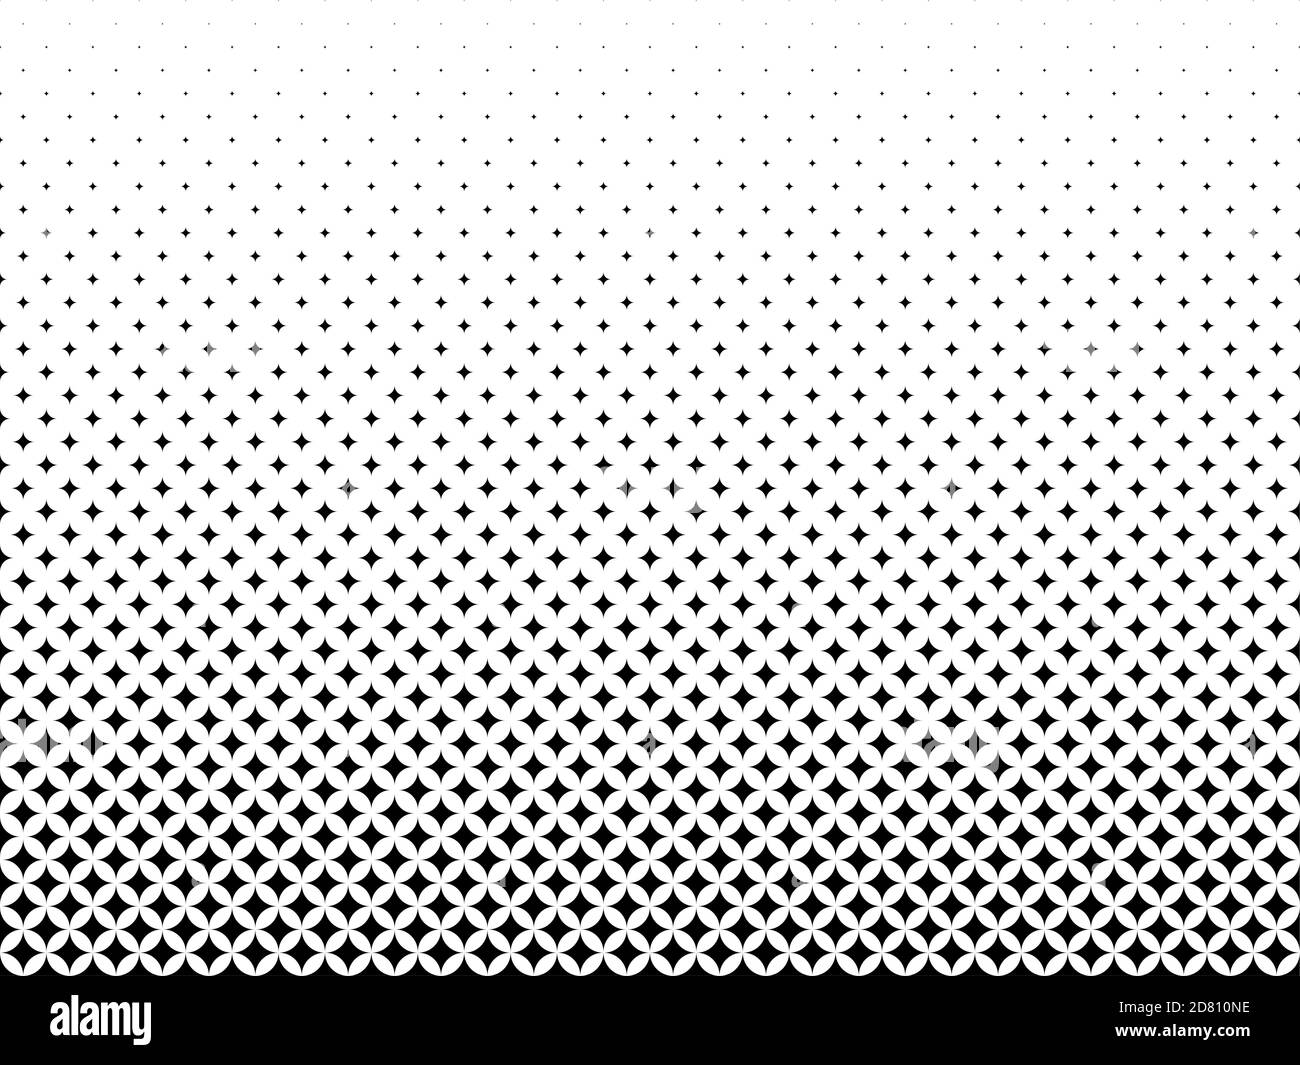 Motivo geometrico di stelle nere su sfondo bianco. Senza giunture in una direzione. Opzione con dissolvenza centrale. 43 figure in altezza. Illustrazione Vettoriale